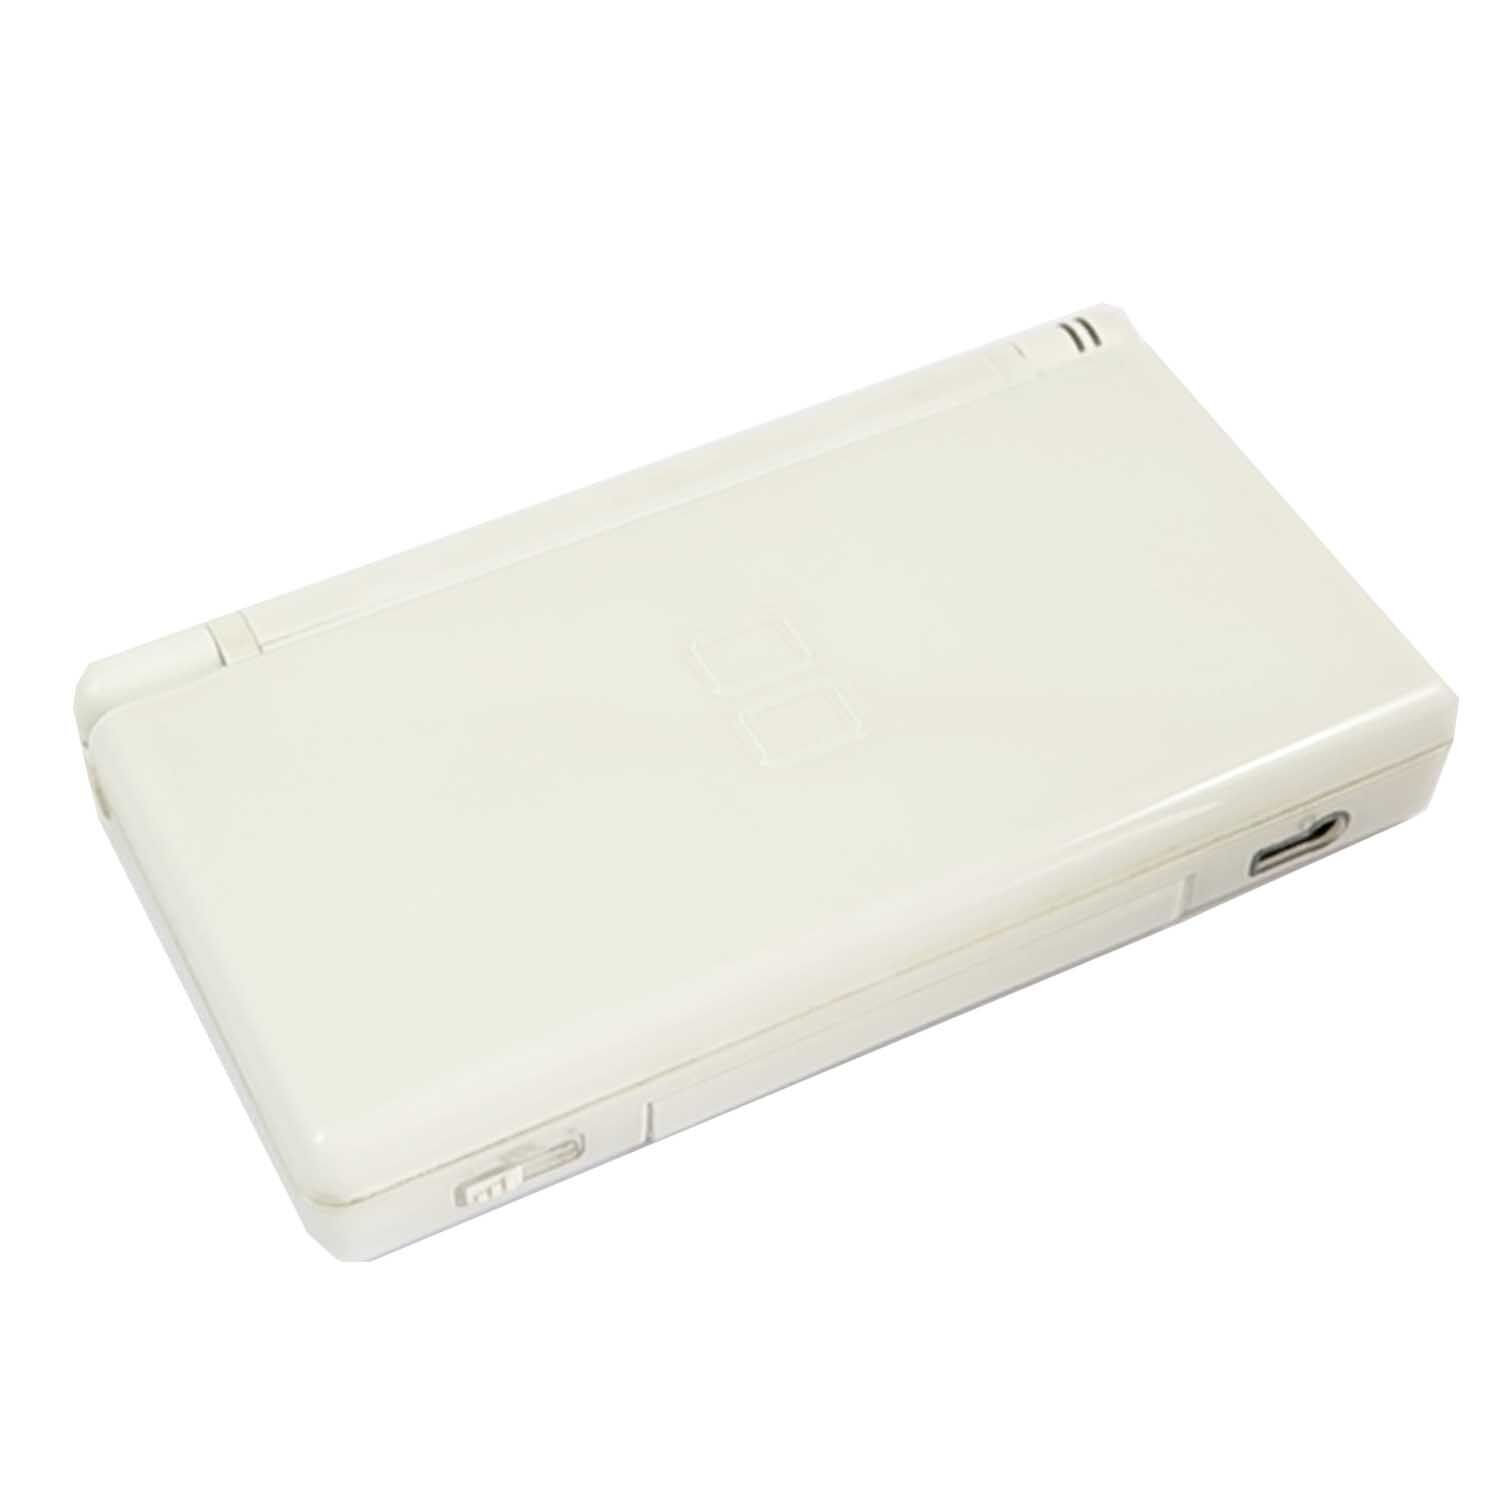 Nintendo DS Lite Weiss/White